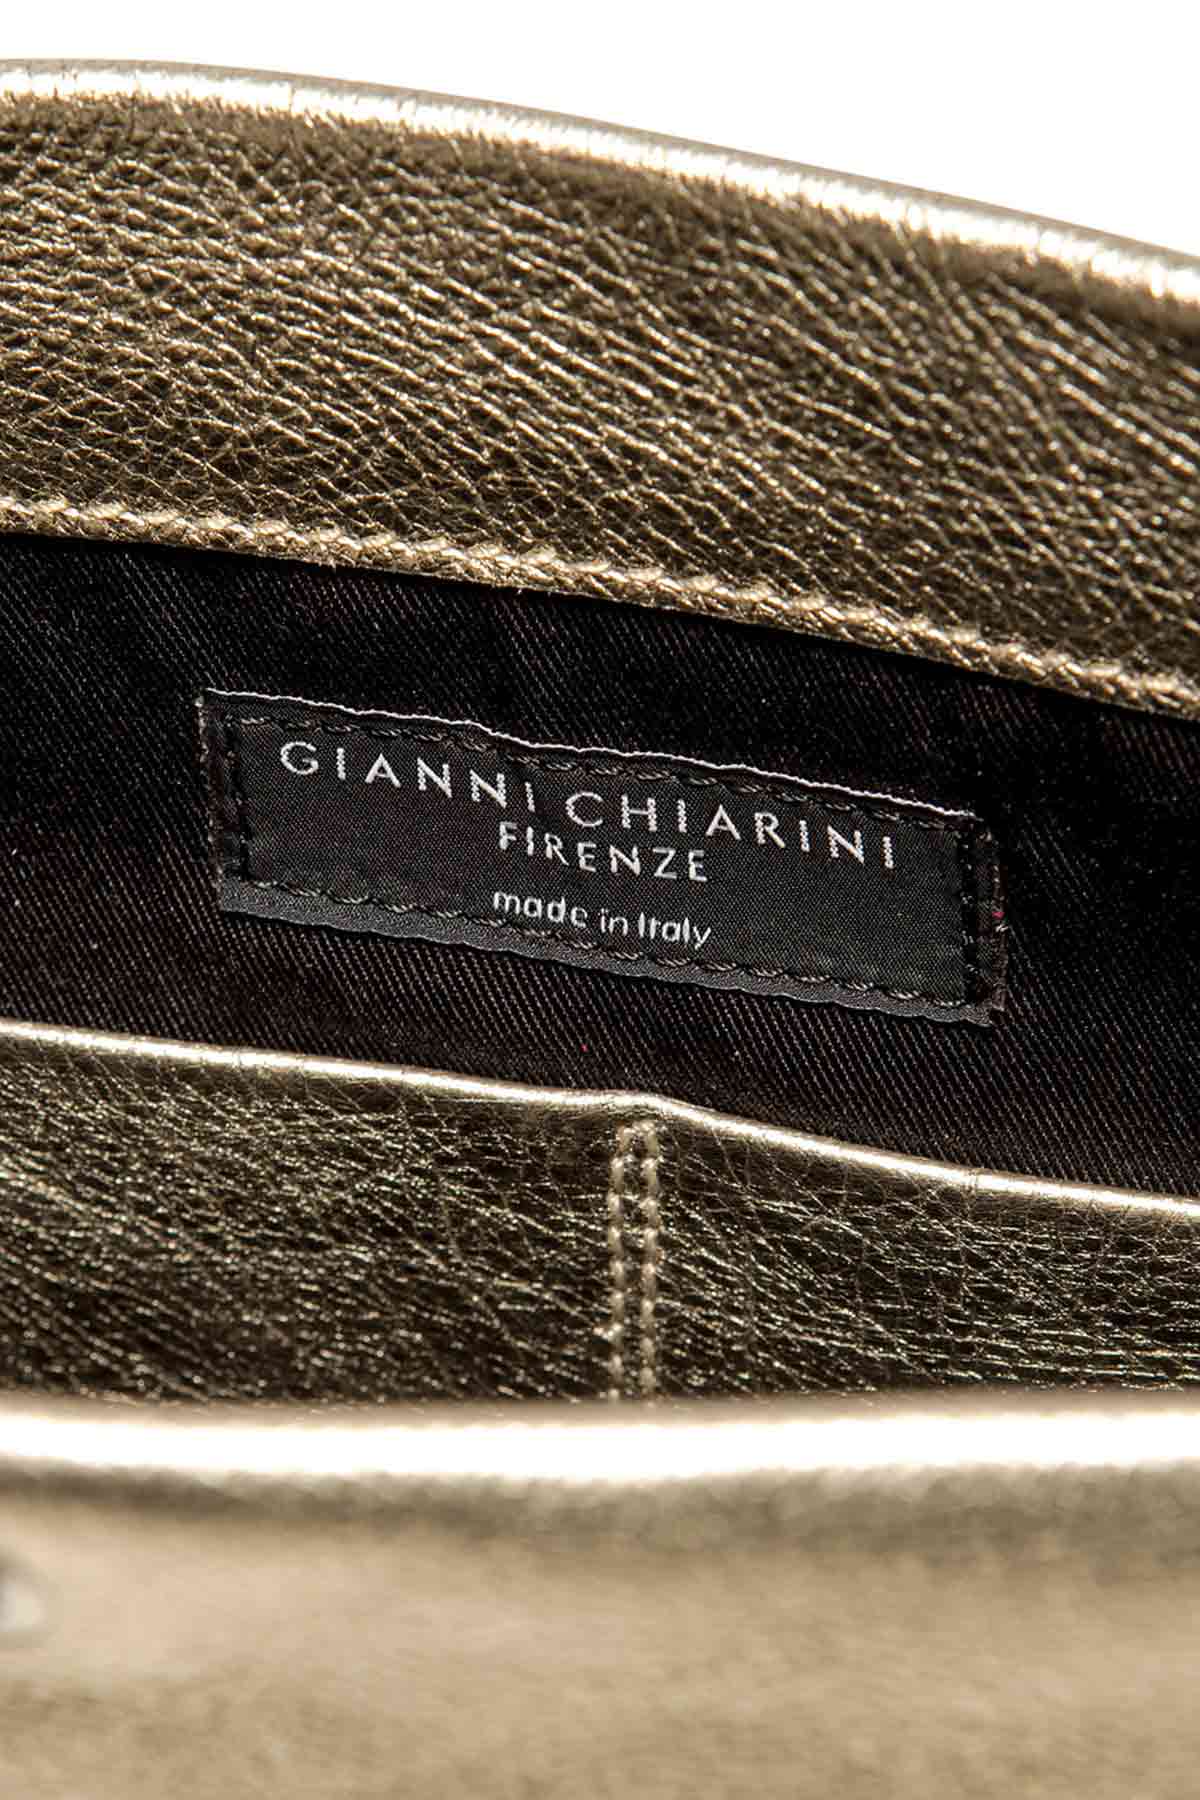 Gianni Chiarini Cherry Deri Çanta-Libas Trendy Fashion Store